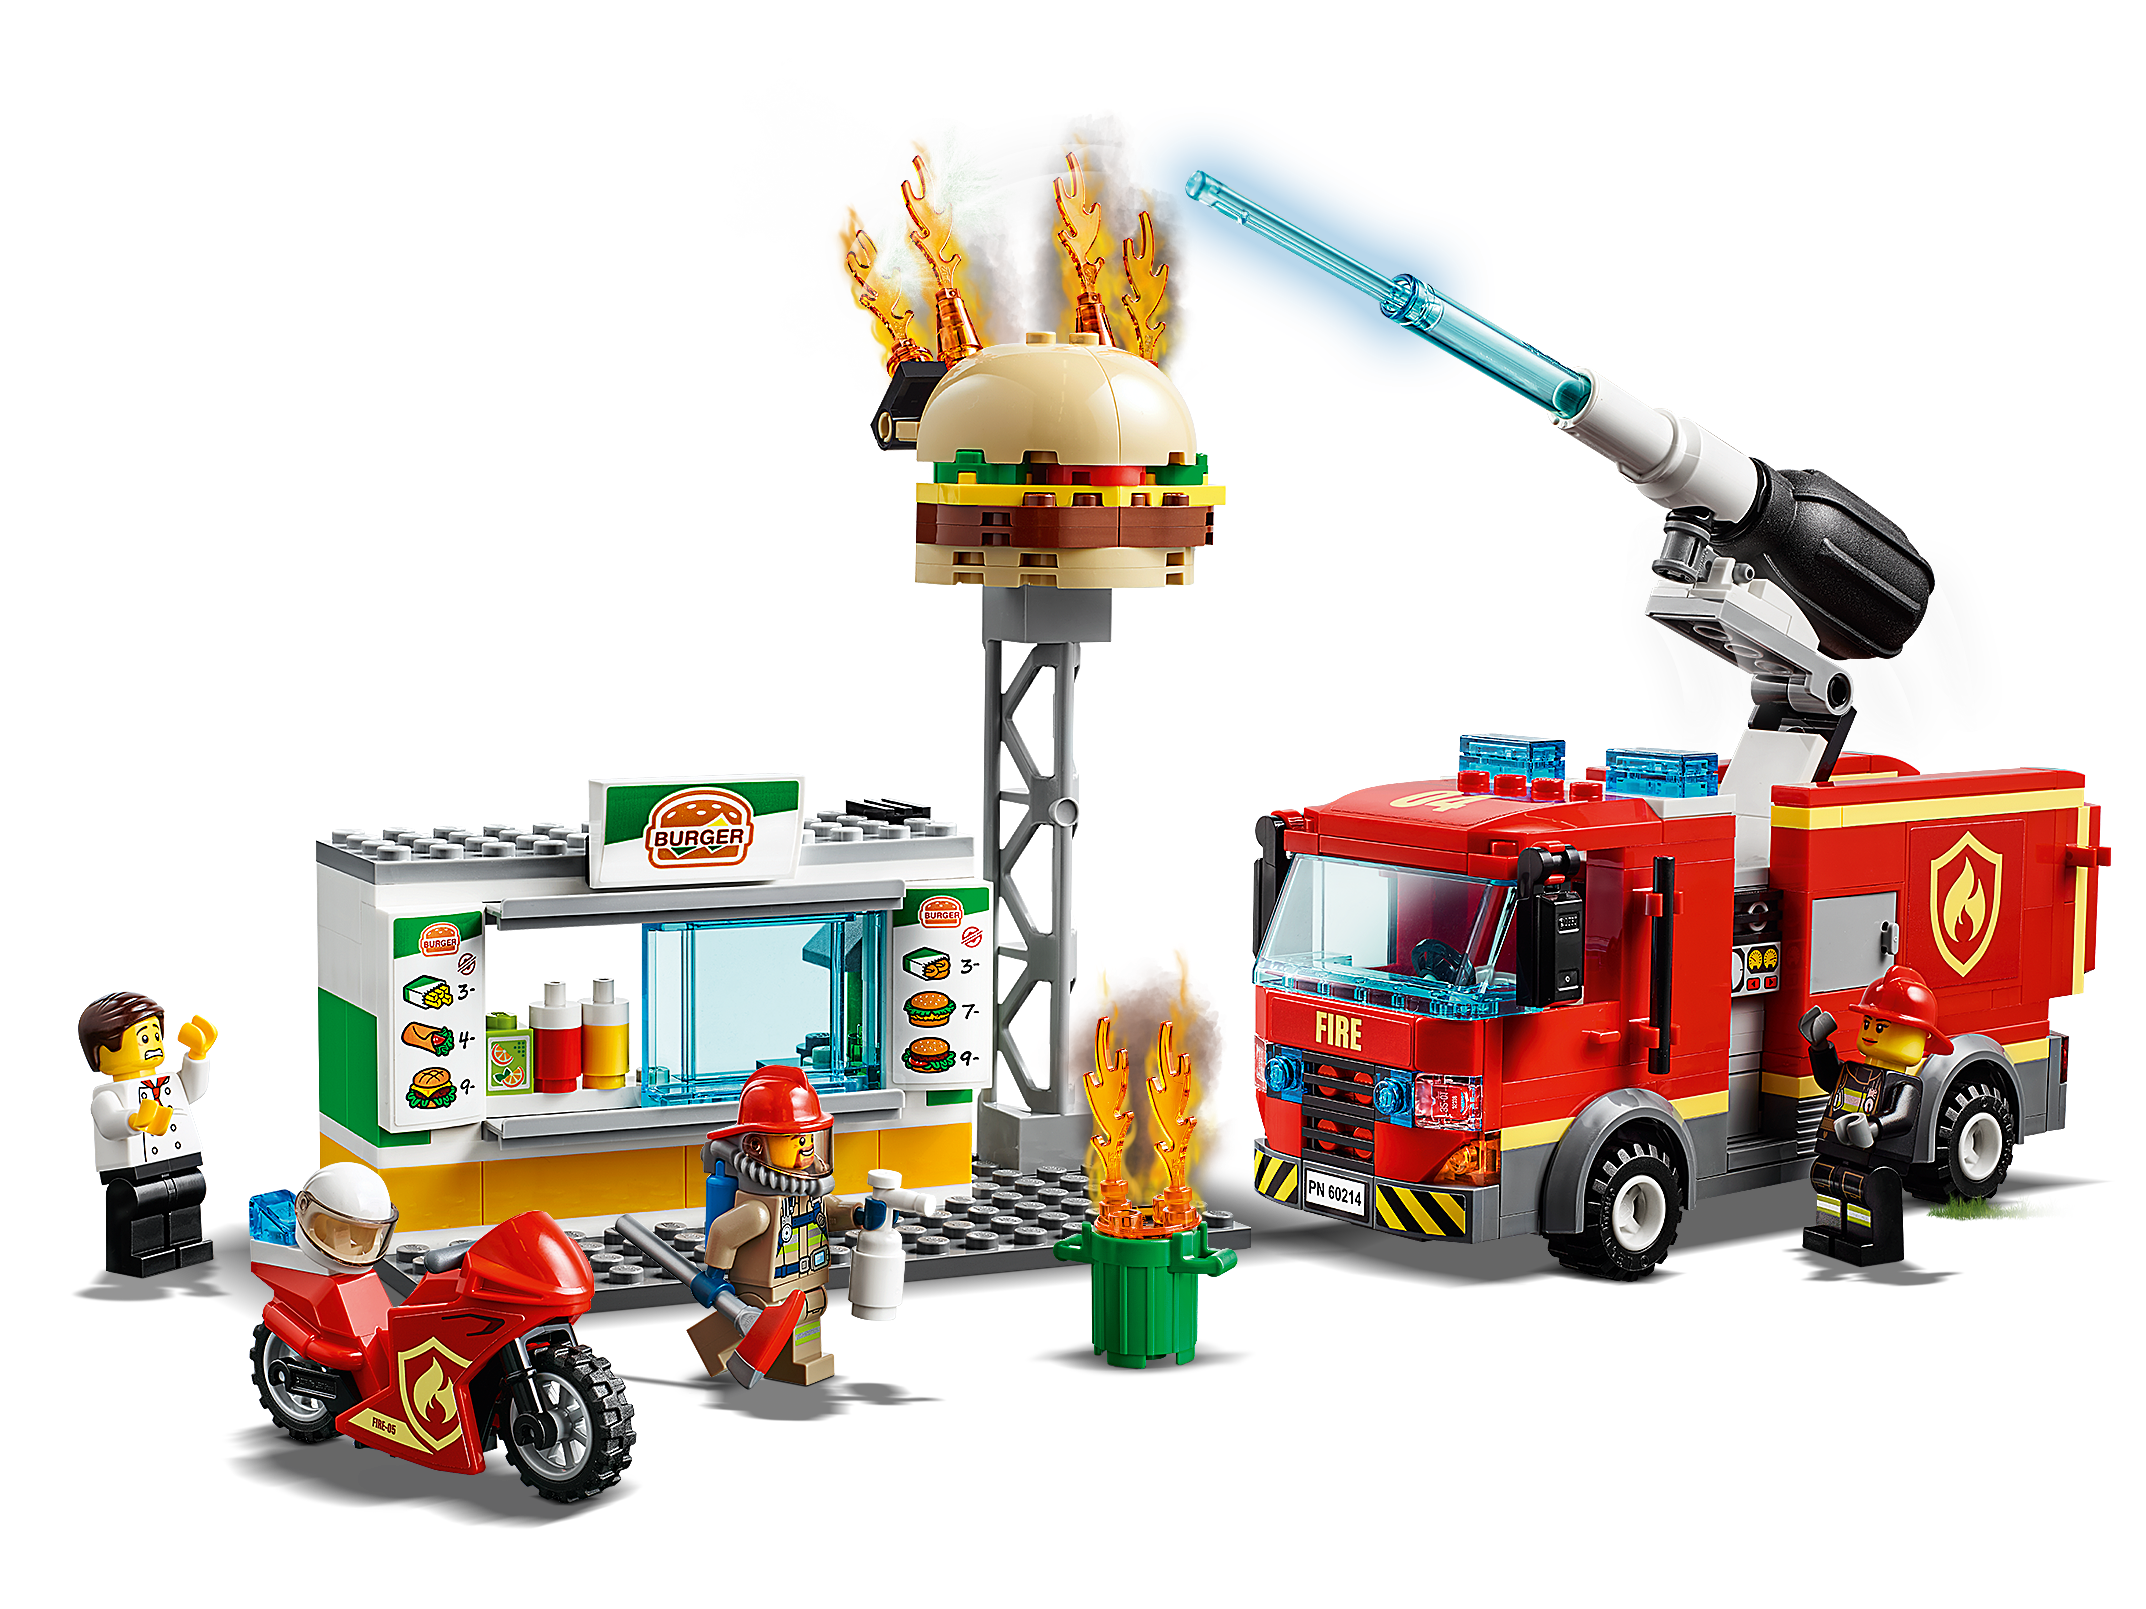 FIAMME AL BURGER BAR LEGO CITY FIRE 60214 